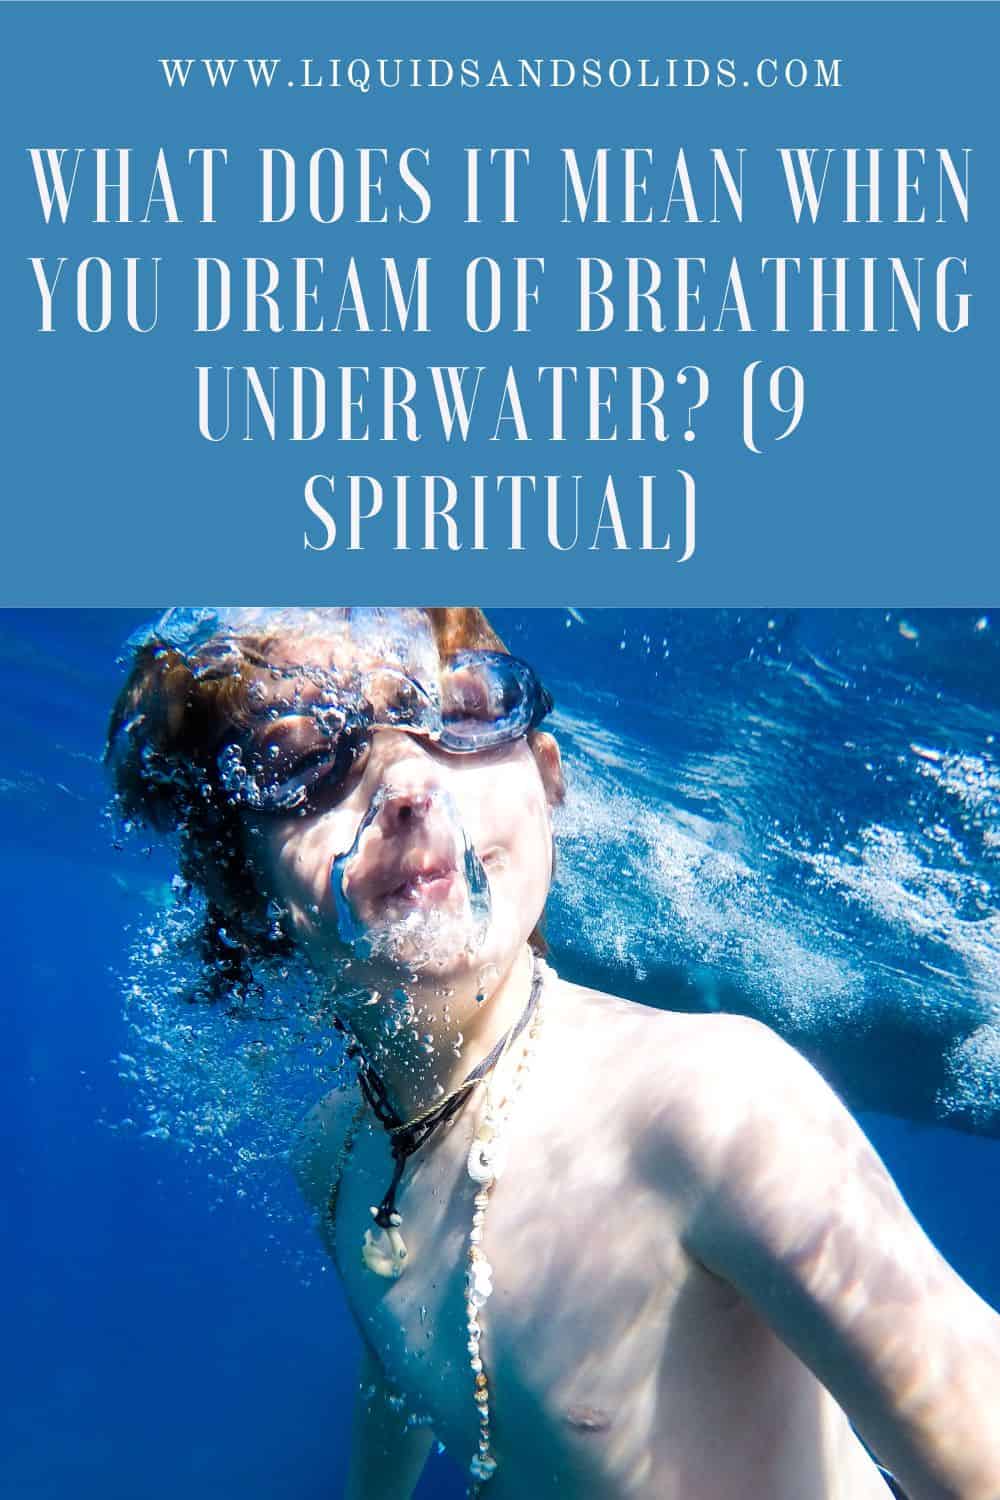  حلم التنفس تحت الماء؟ (9 معاني روحية)